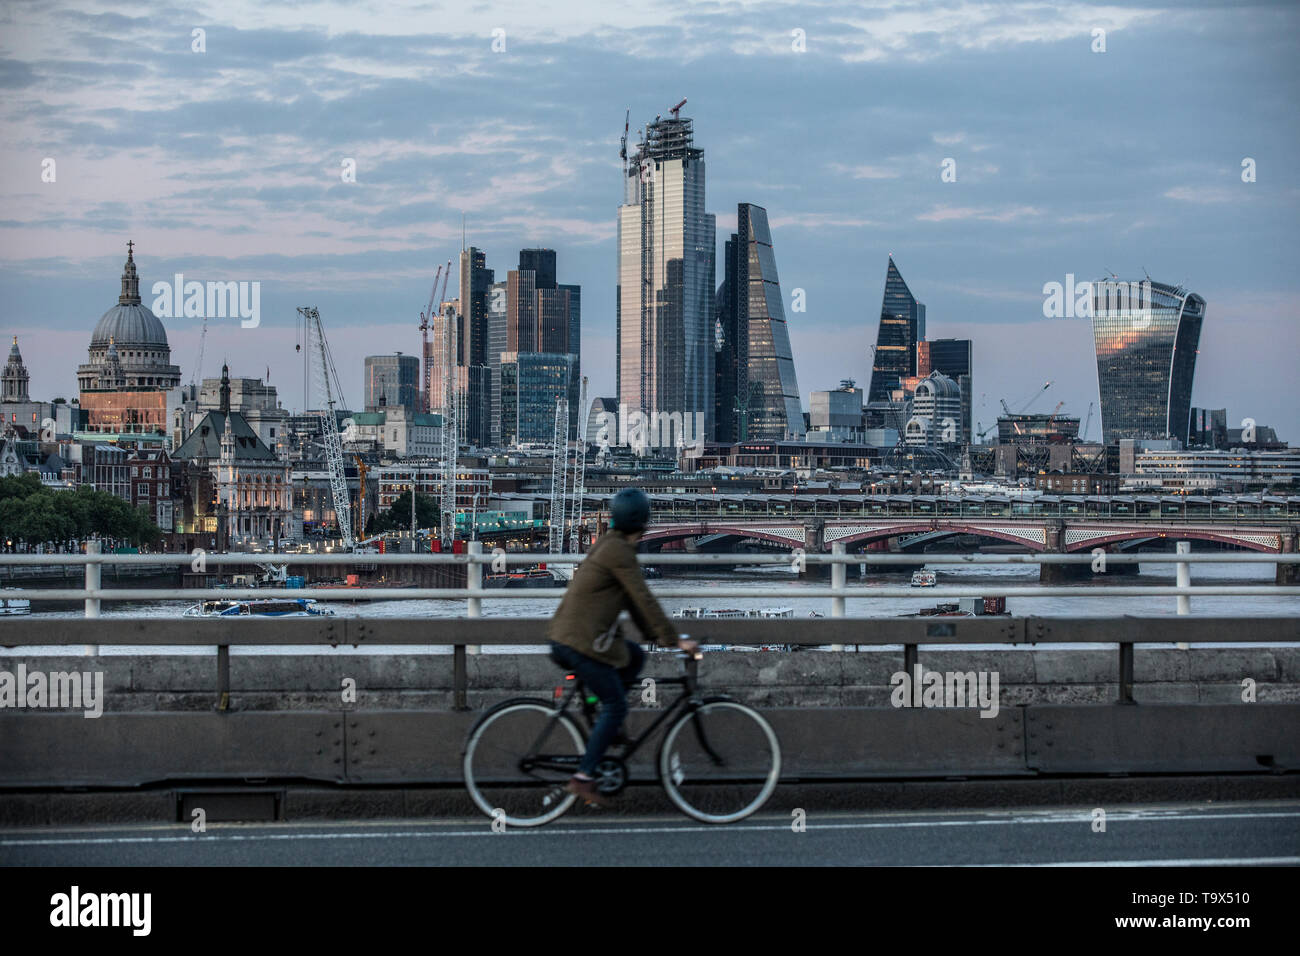 Radfahrer kreuzen Waterloo Bridge mit St. Paul's Cathedral und die Wolkenkratzer der Stadt London Financial District in der Ferne, London, UK Stockfoto